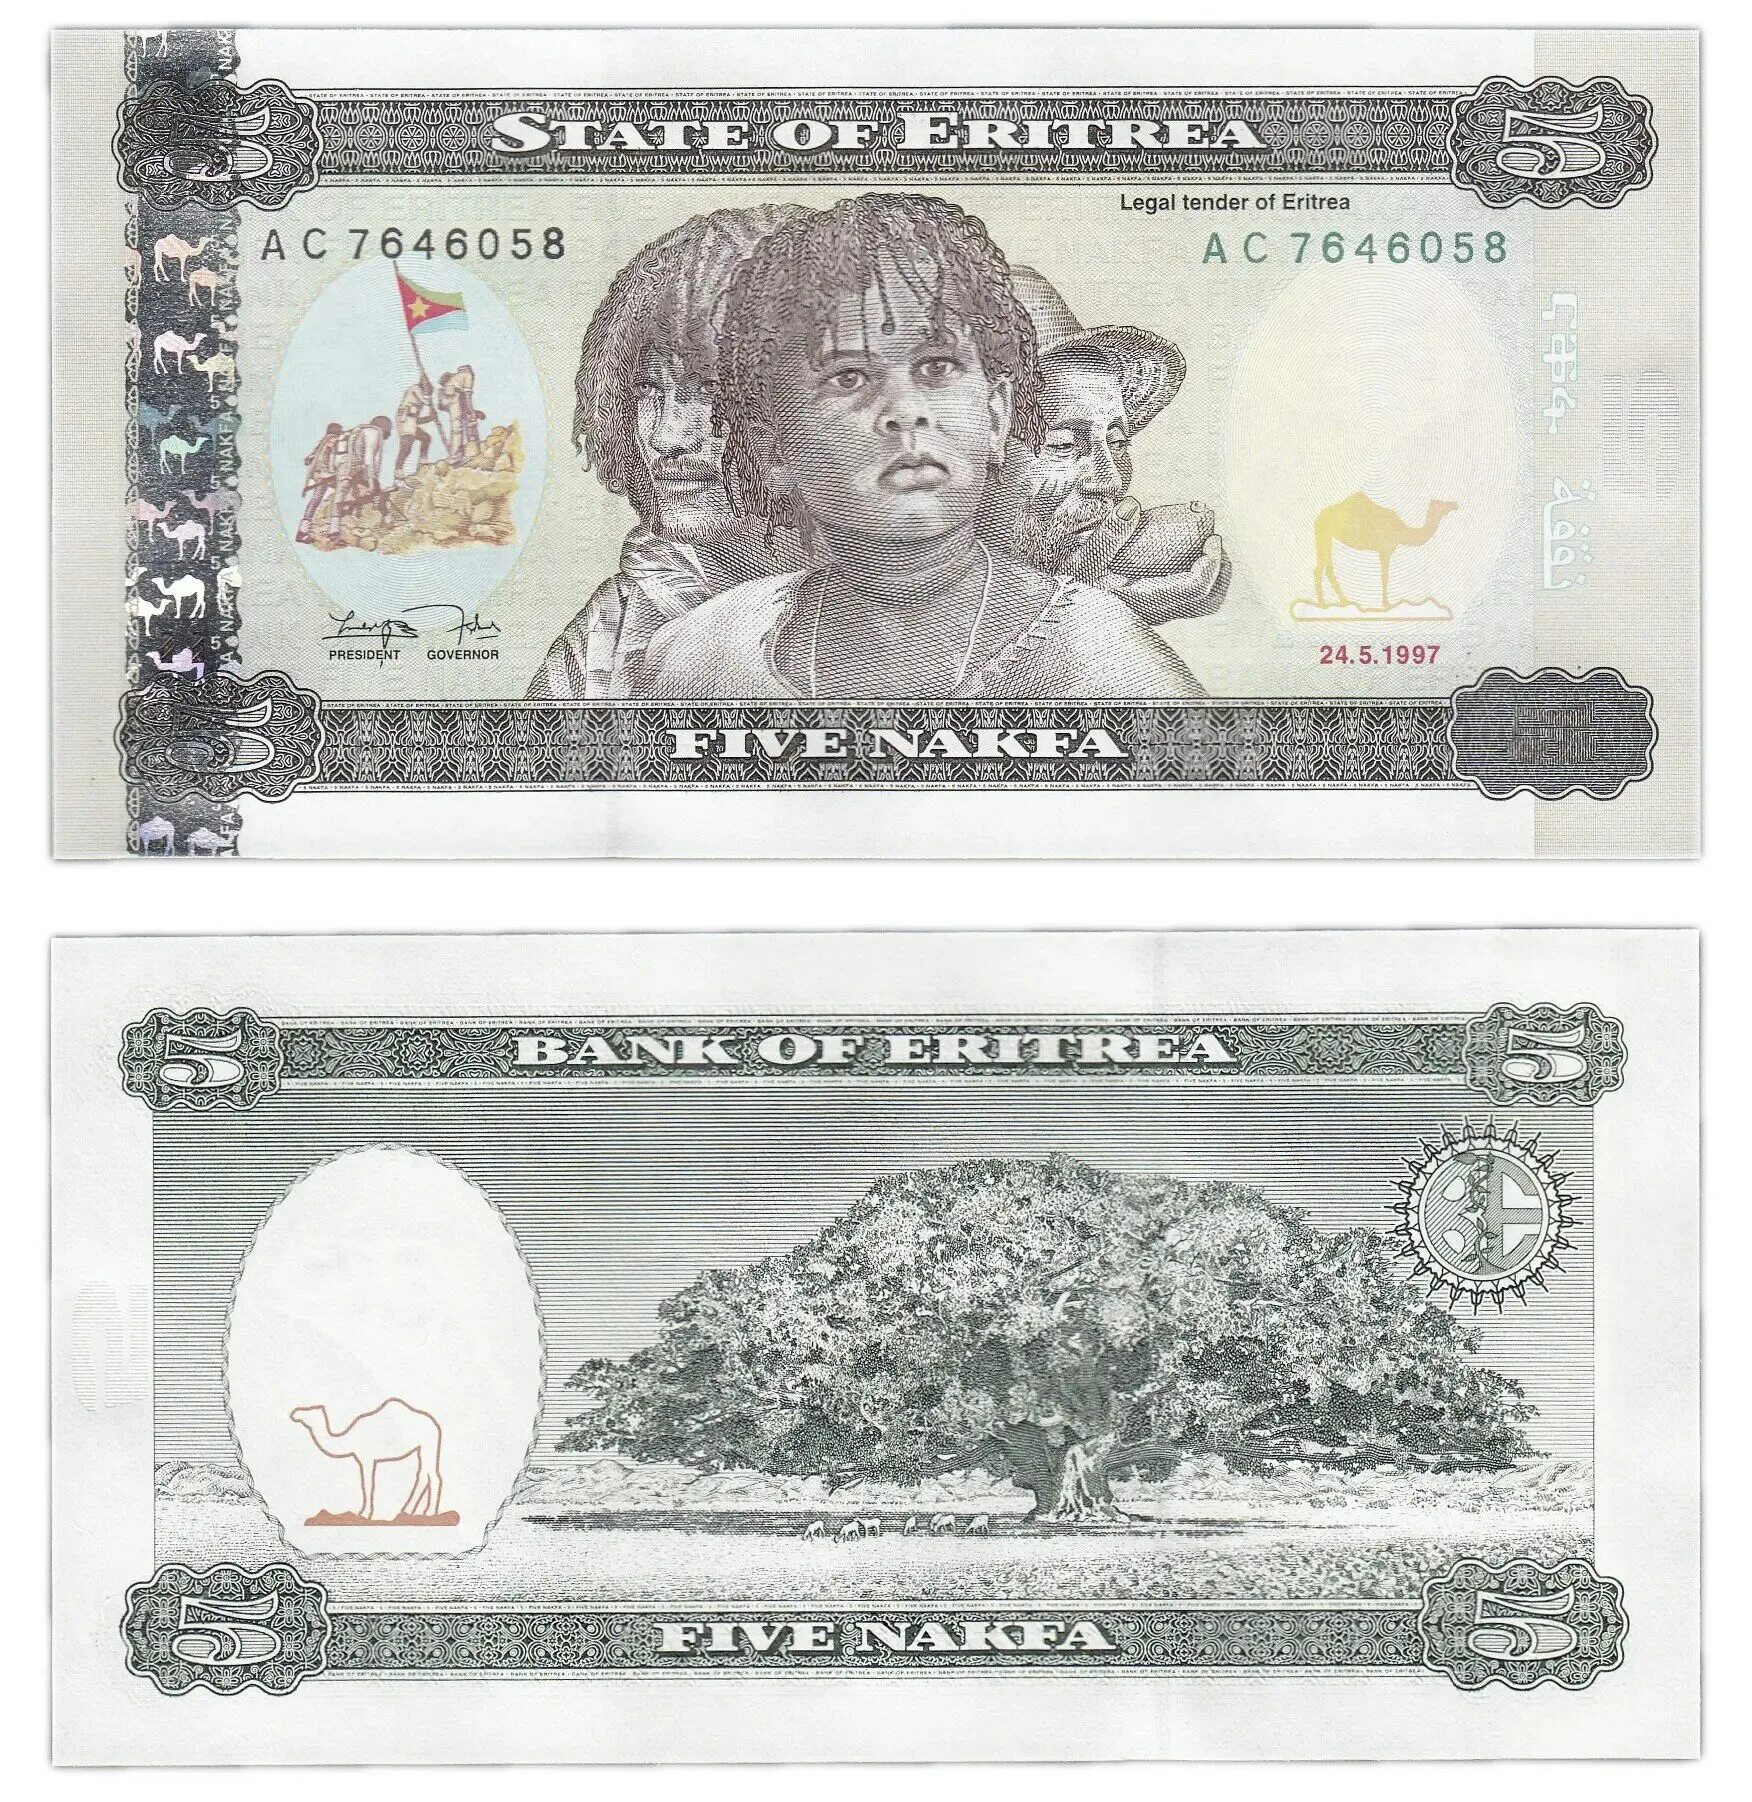 5 купюра купить. Эритрея 100 накфа 1997. Эритрея 10 накфа 2012. Эритрея 1 накфа 1997 монетник. Эритрея 1997 50 накфа.